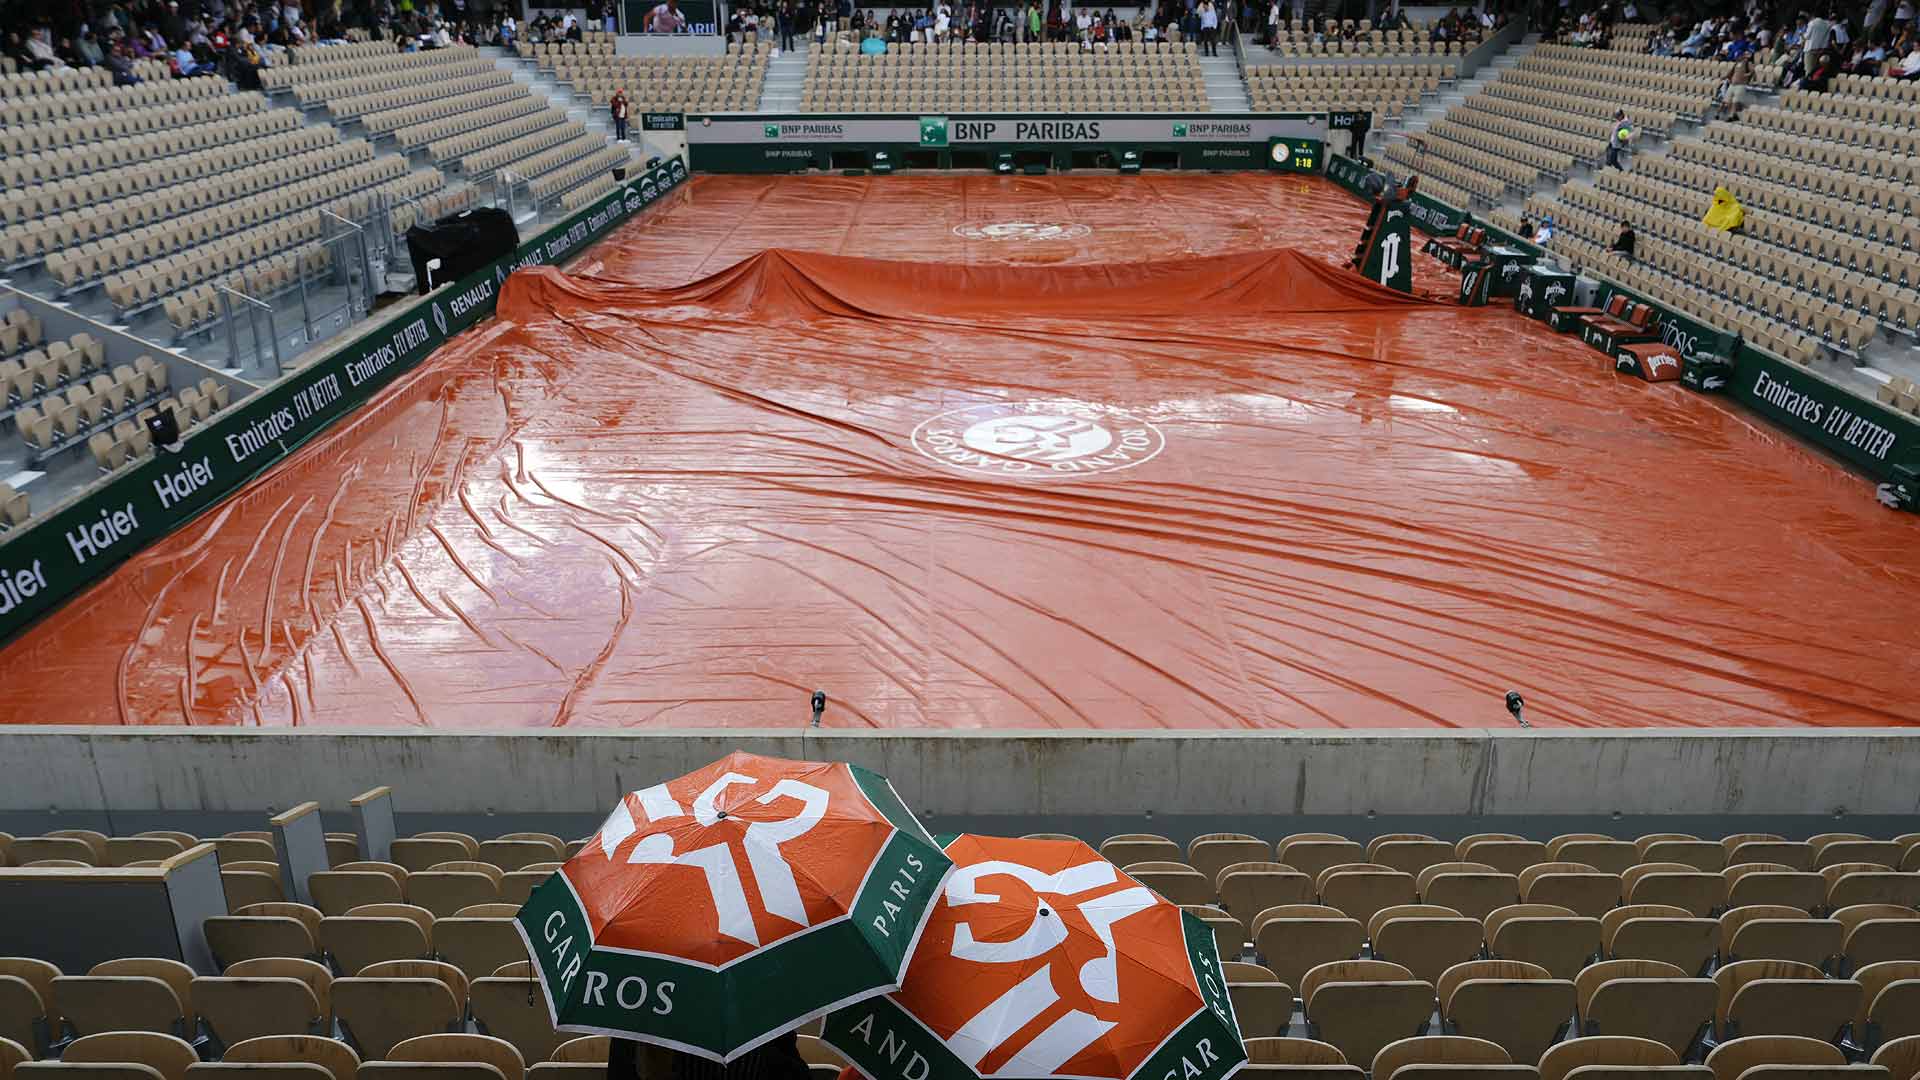 La pluie interrompt le jeu lundi sur les courts extérieurs de Roland Garros |  Tournée ATP